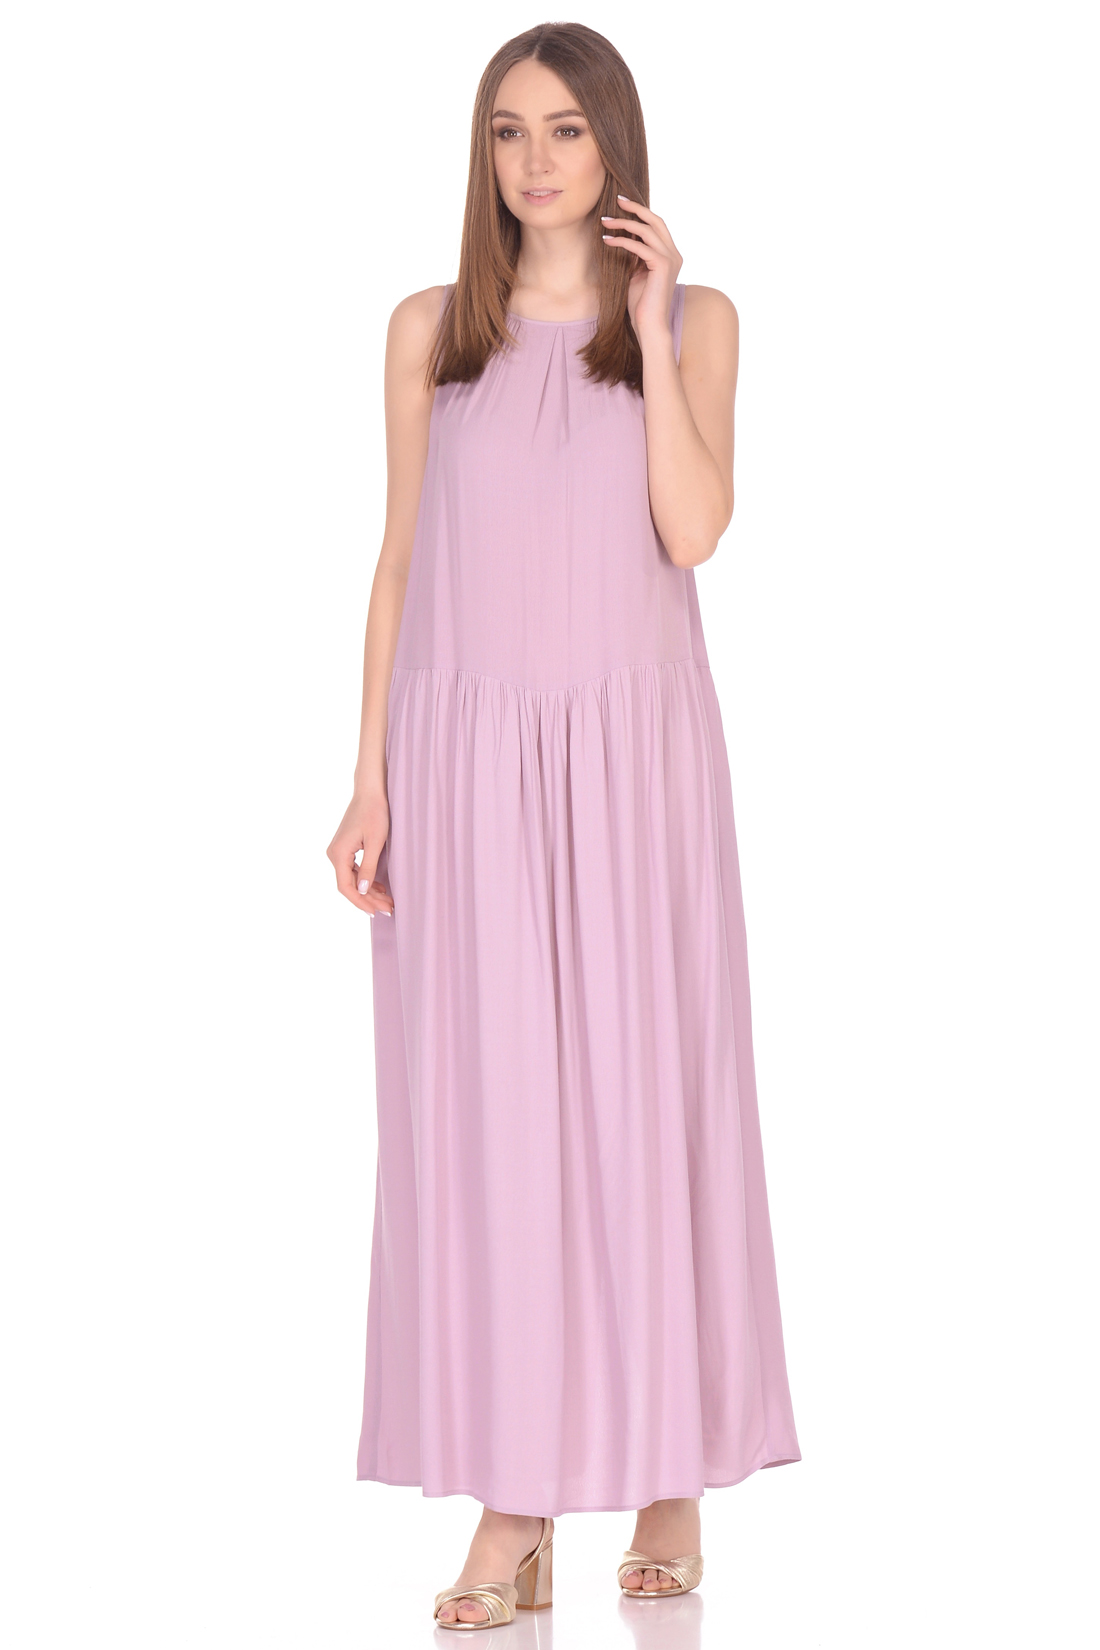 Прямое платье в пол (арт. baon B458084), размер XL, цвет розовый Прямое платье в пол (арт. baon B458084) - фото 1